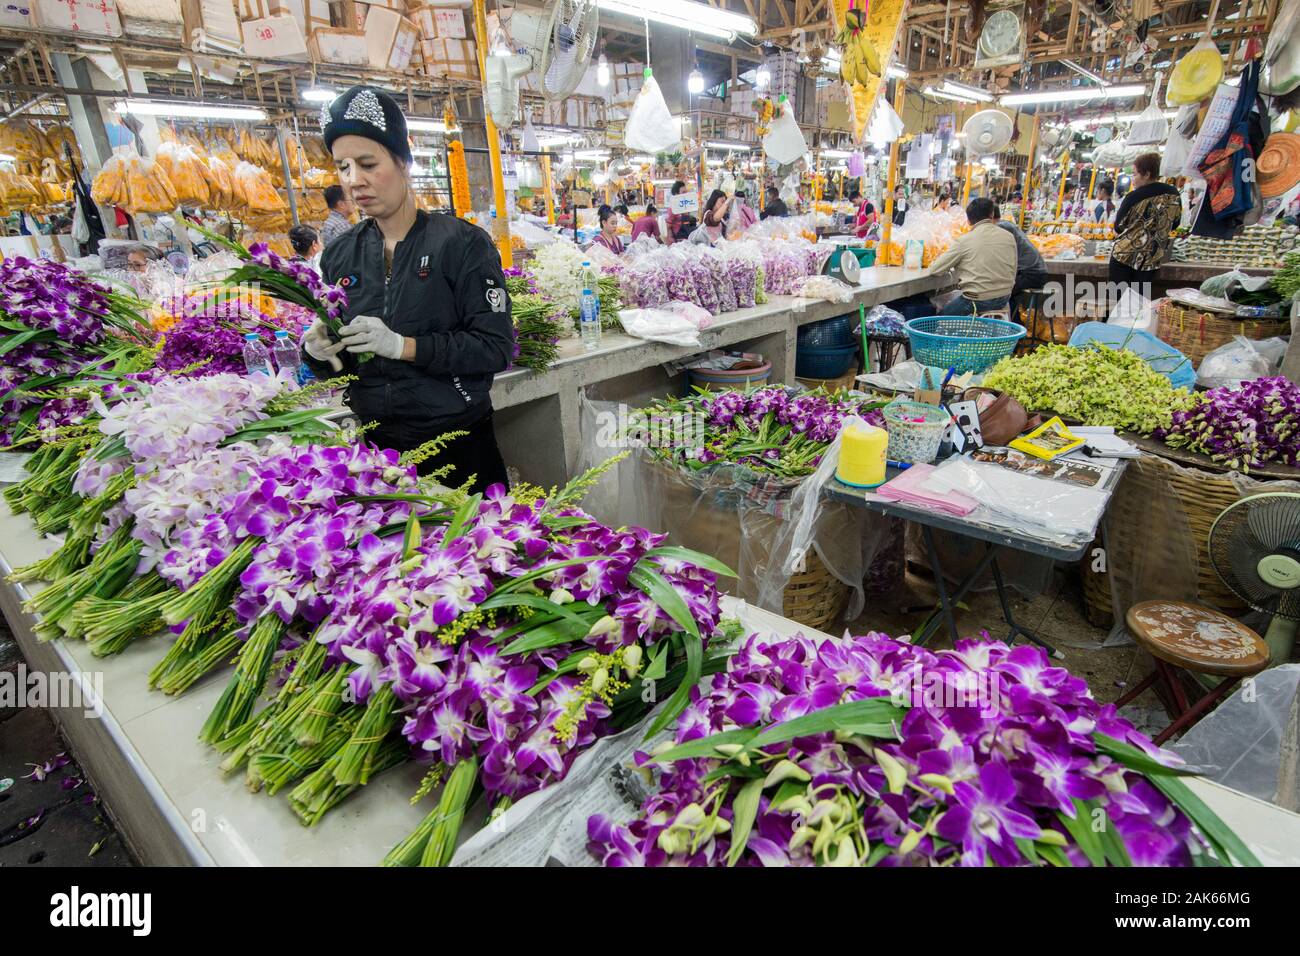 Des fleurs fraîches au marché aux fleurs de la Tha Klang marché dans la ville de Bangkok en Thaïlande en Asie Southest. Thaïlande, Bangkok, novembre, 2019 Banque D'Images